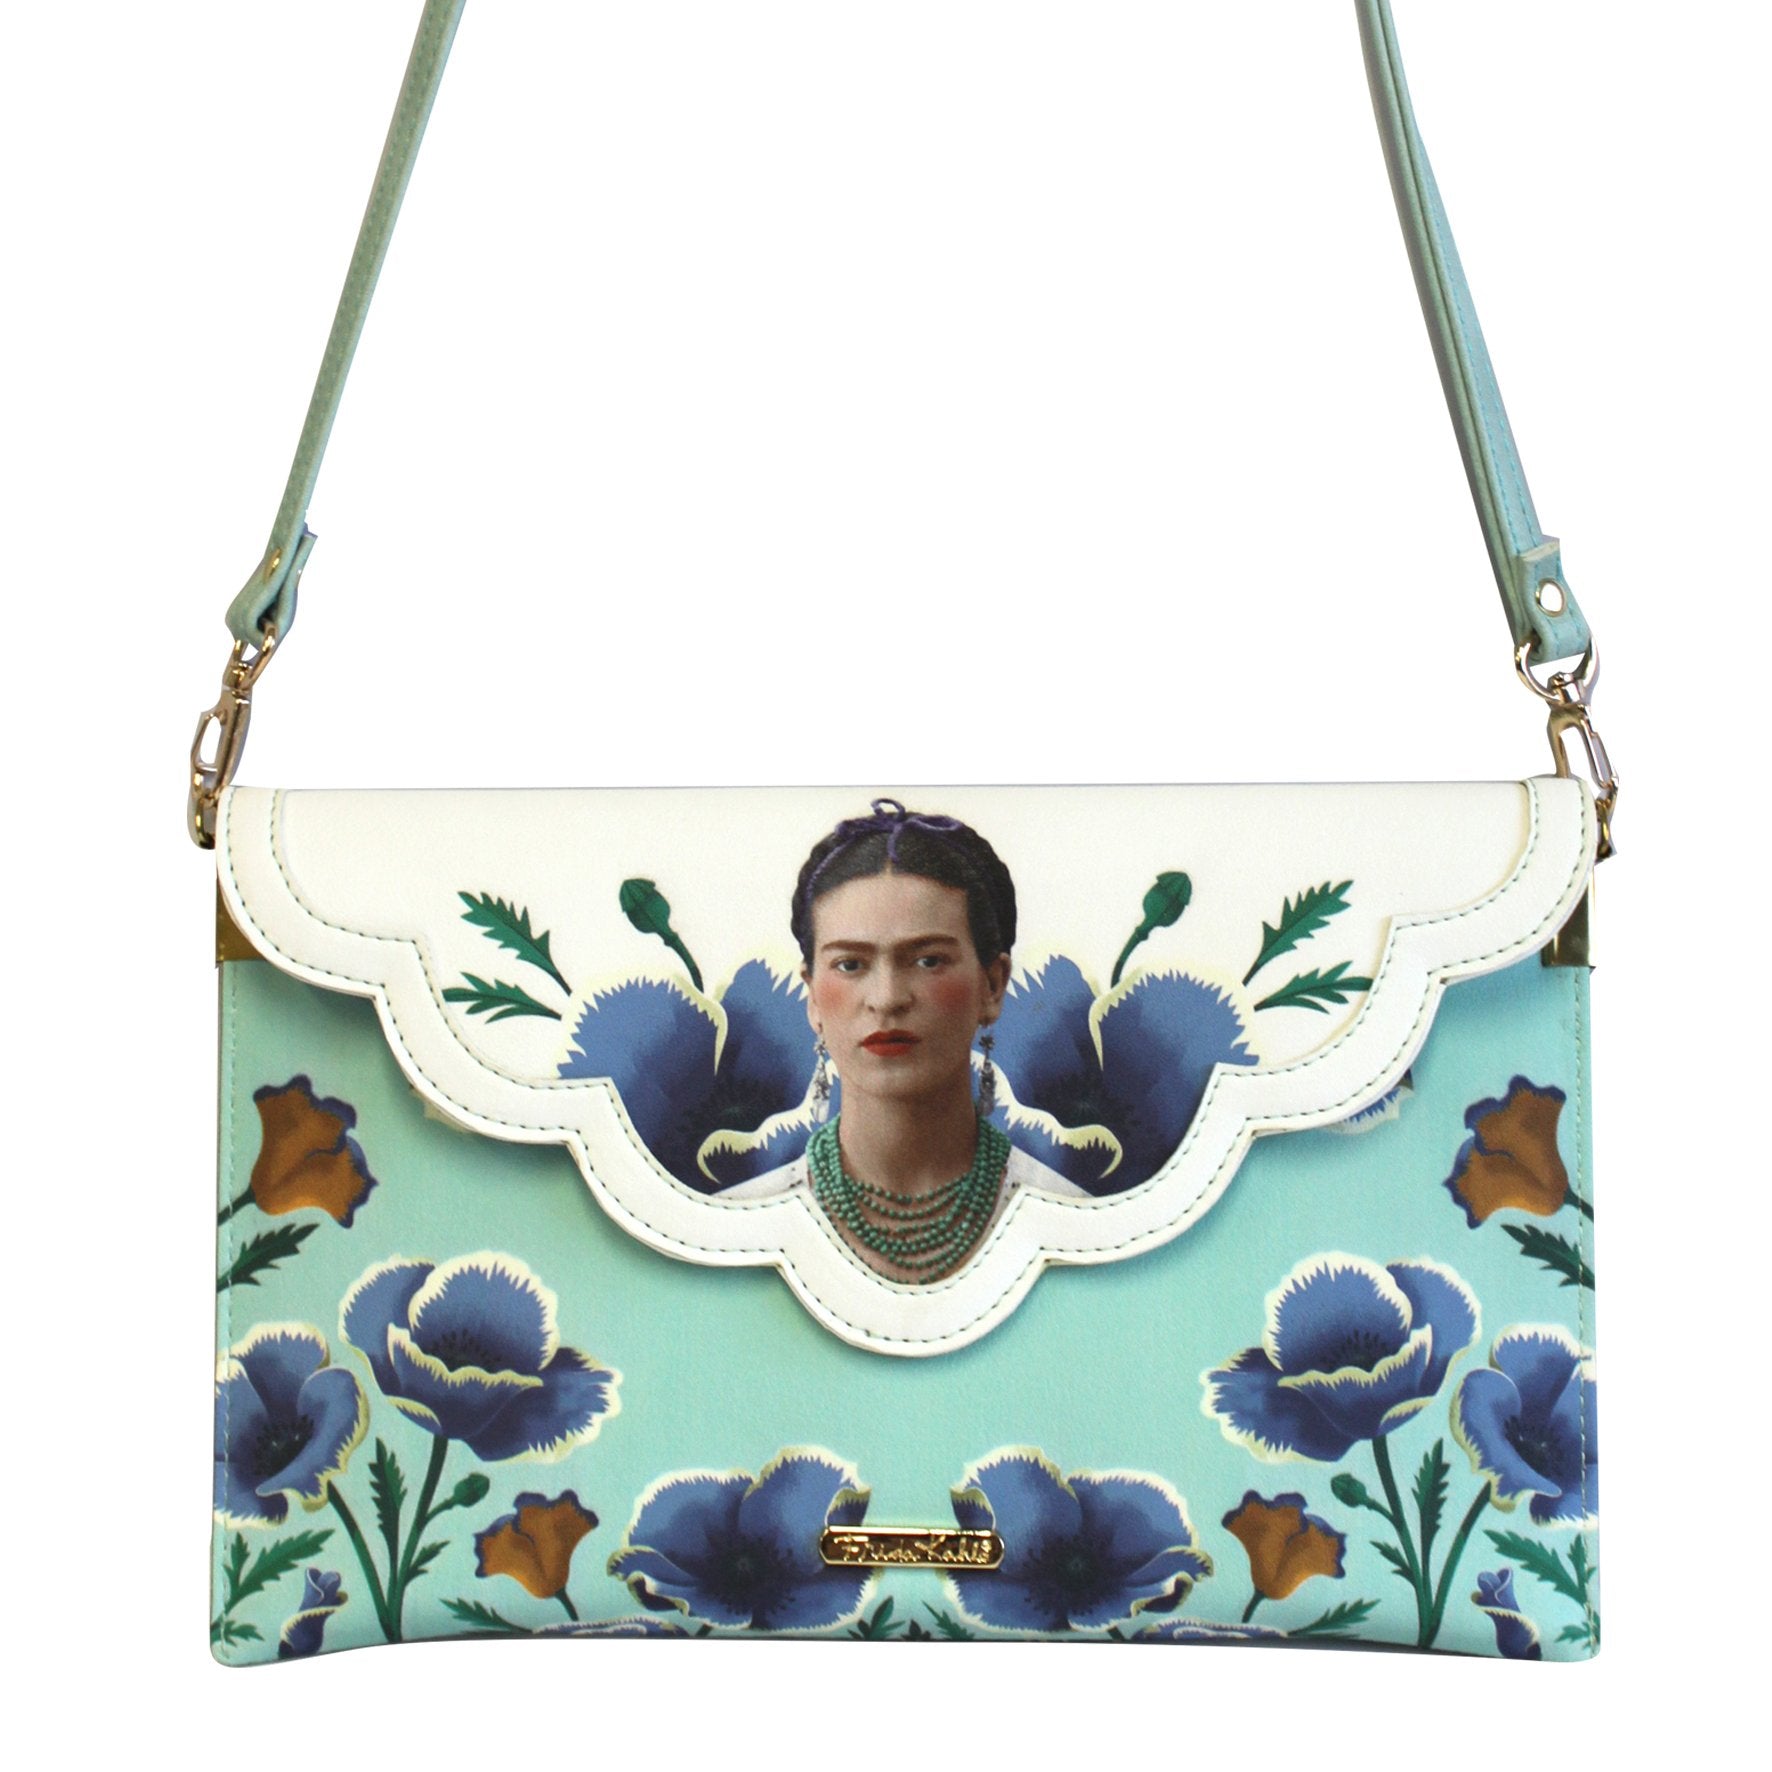 Frida Kahlo Clutch Bag